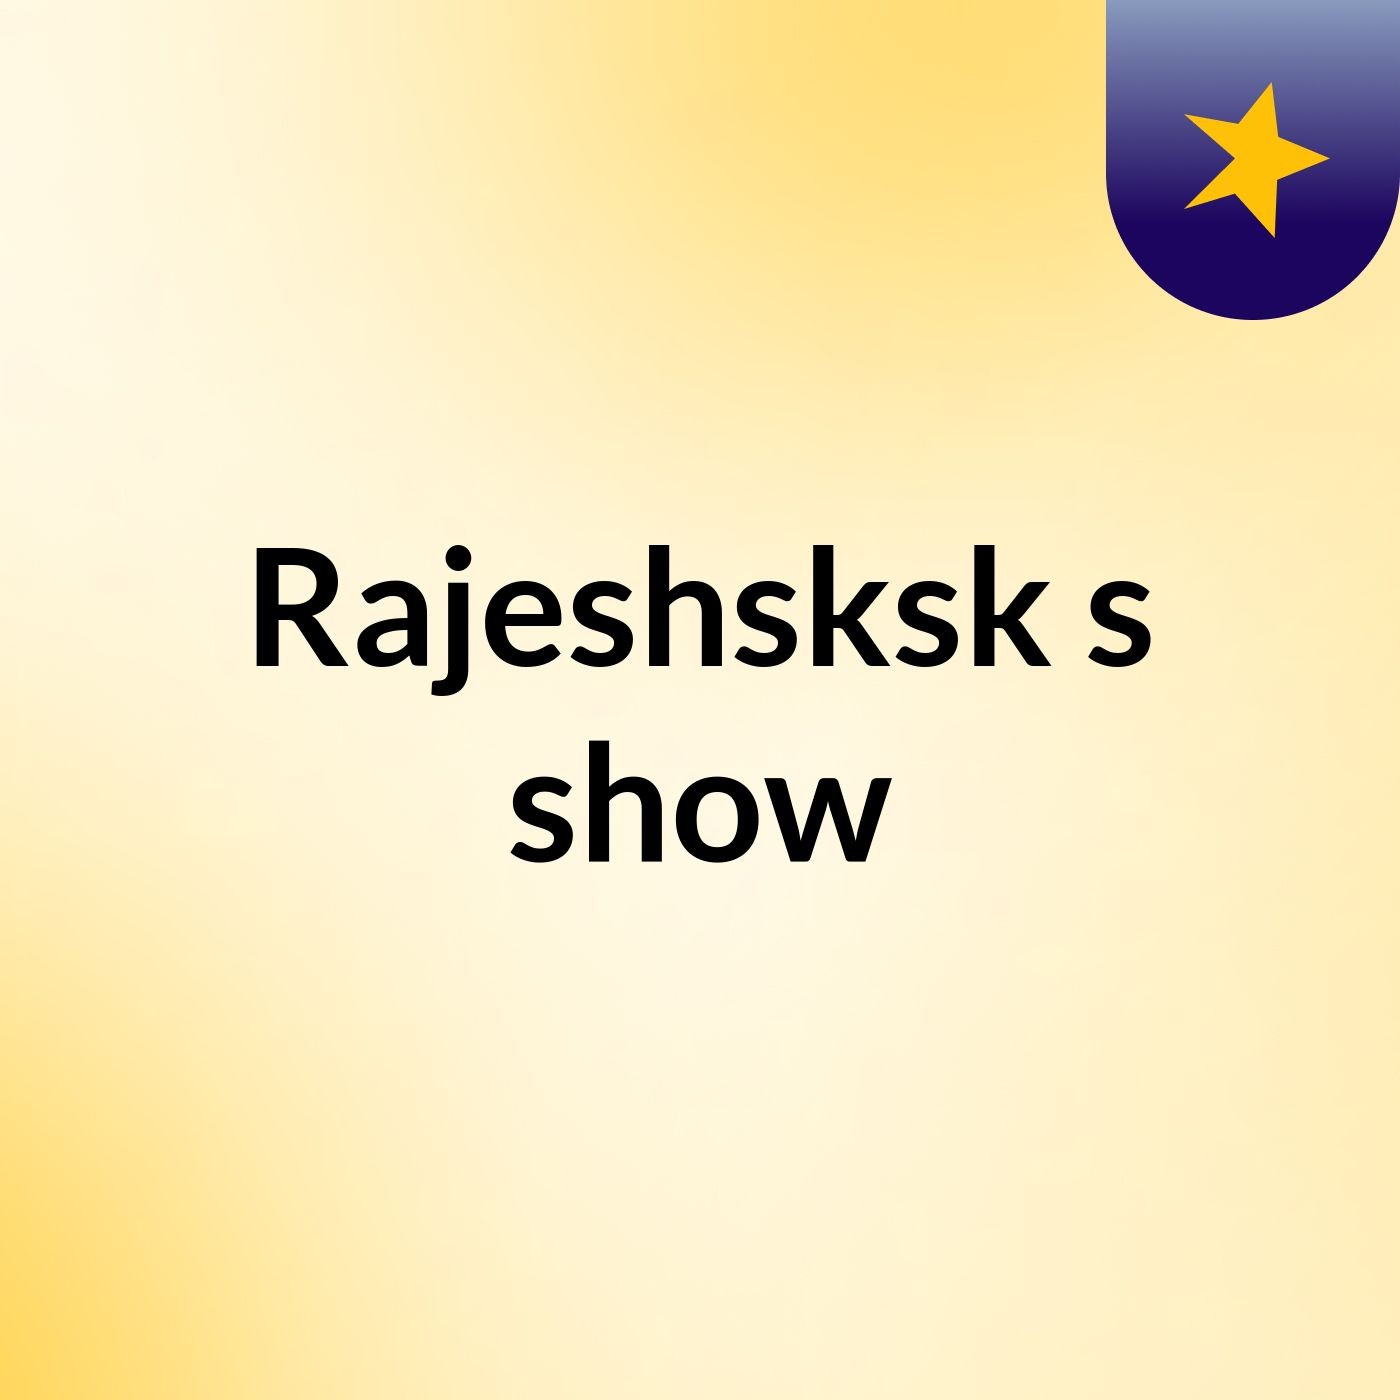 Episode 3 - Rajeshsksk's show